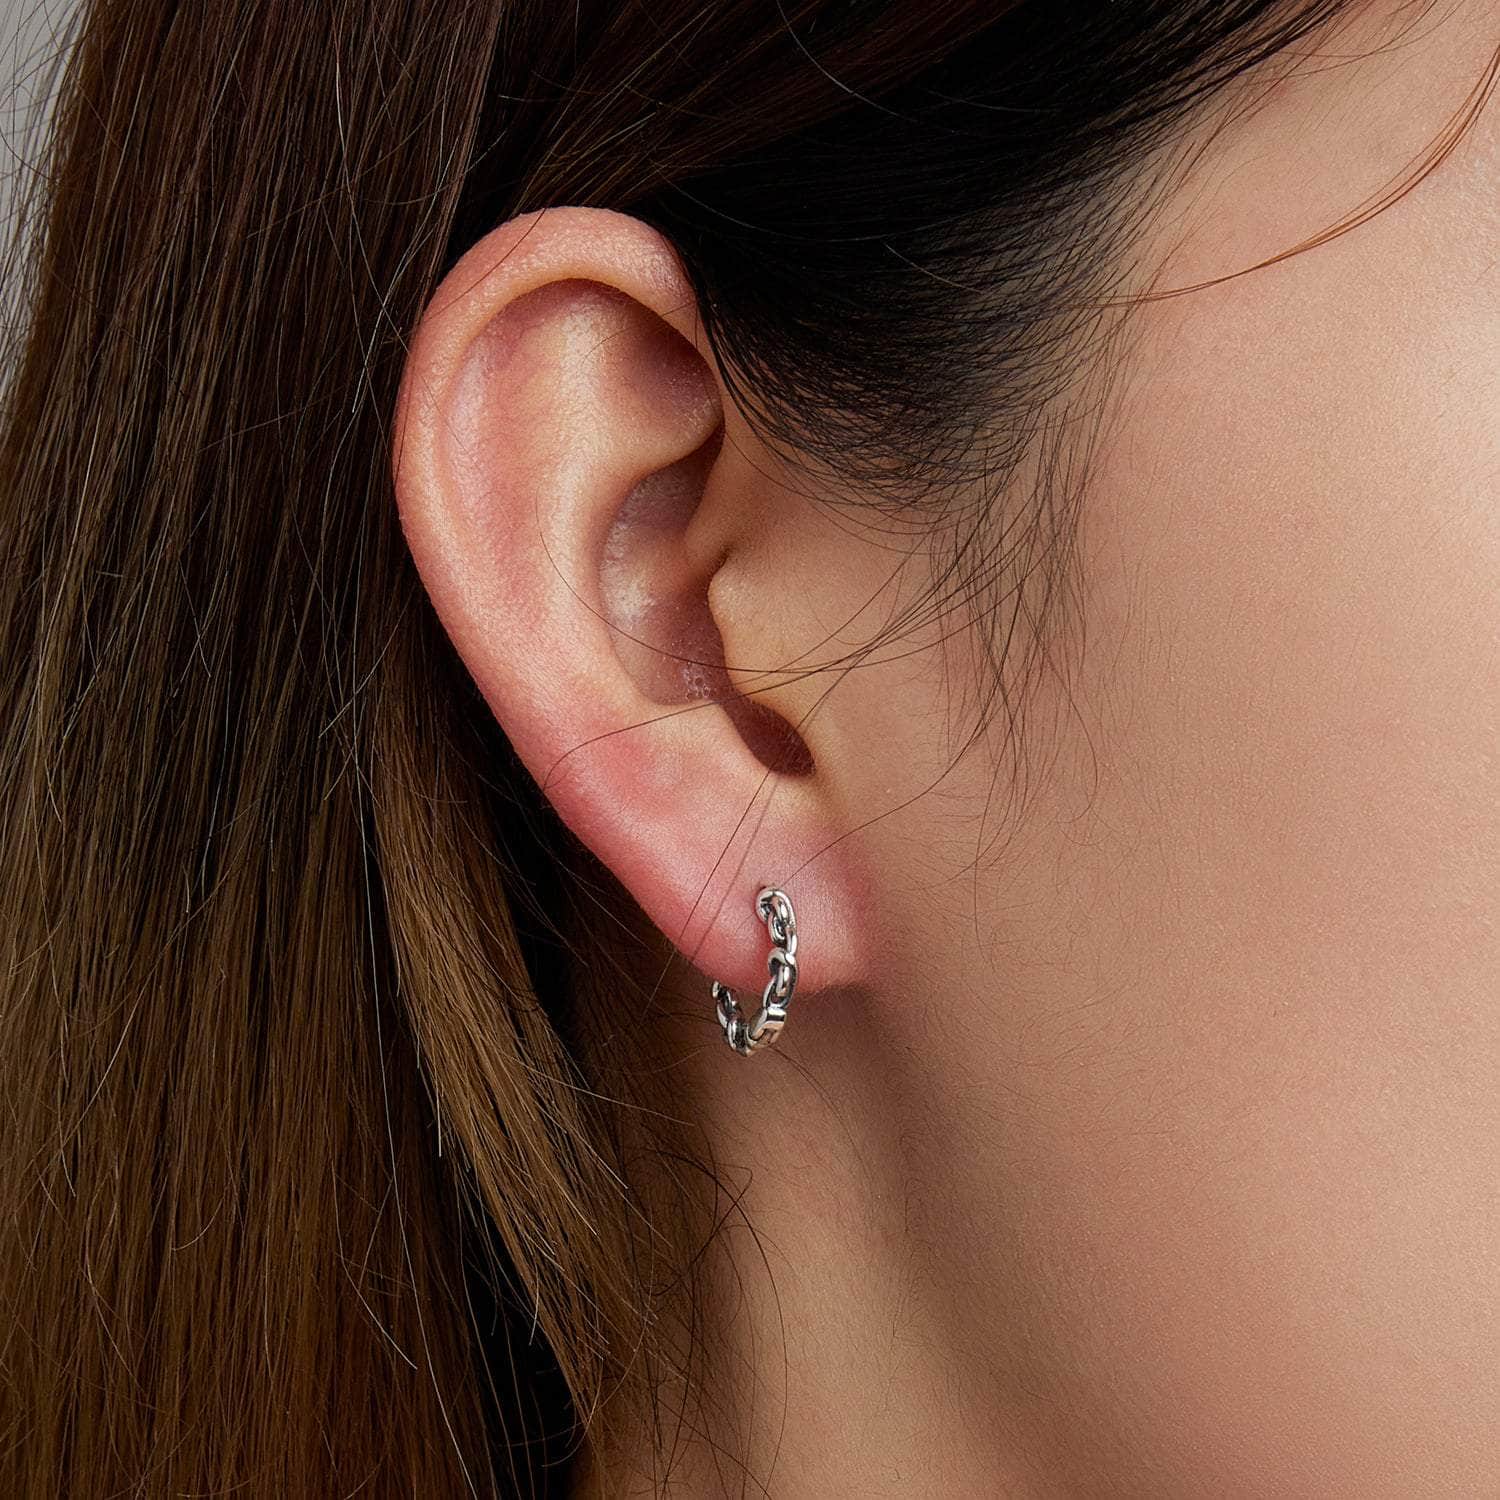 jewelaus Earrings Link Hoop Earrings